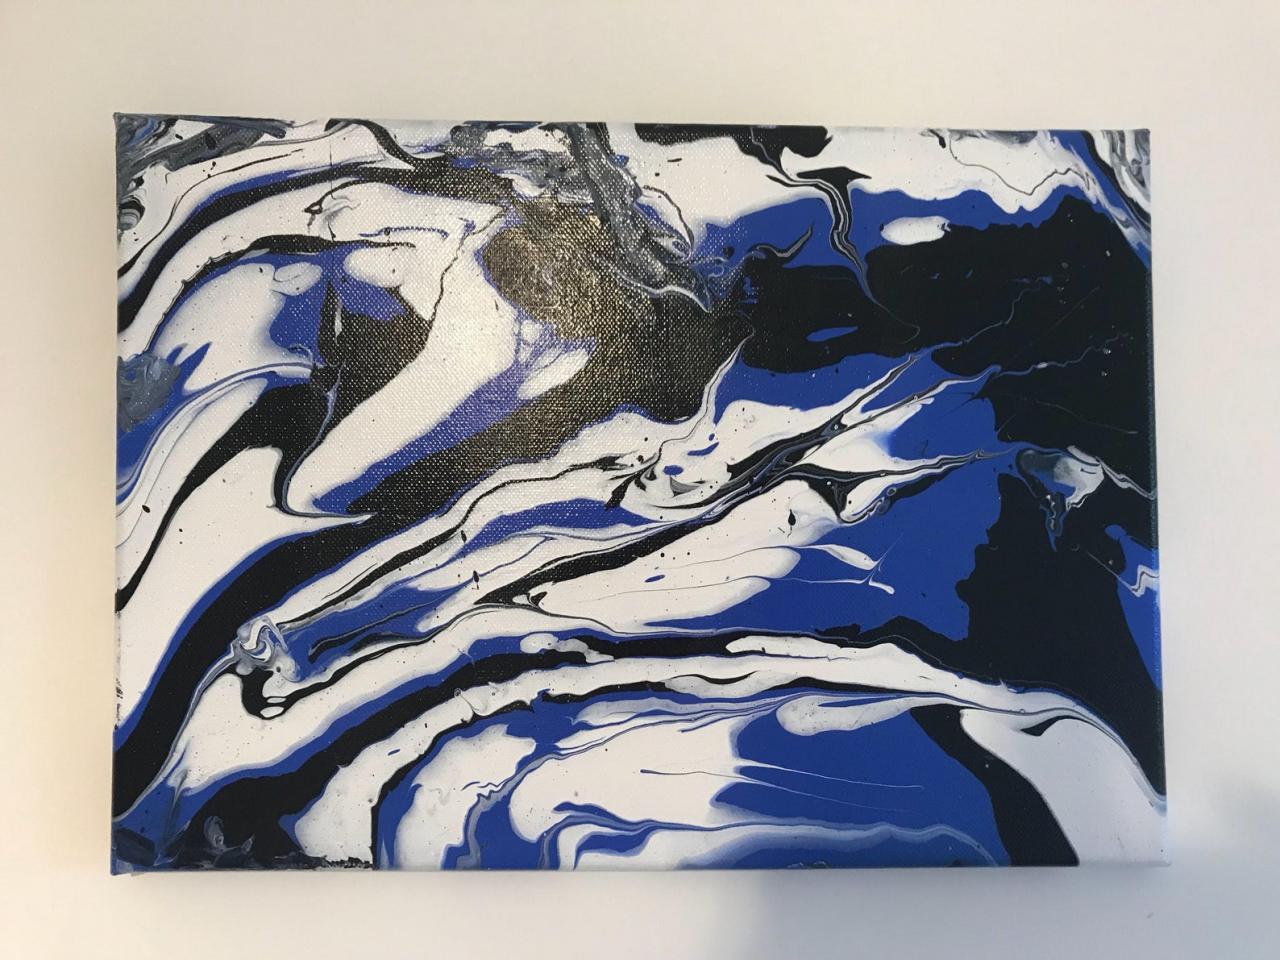 Blue acrylic fluid painting